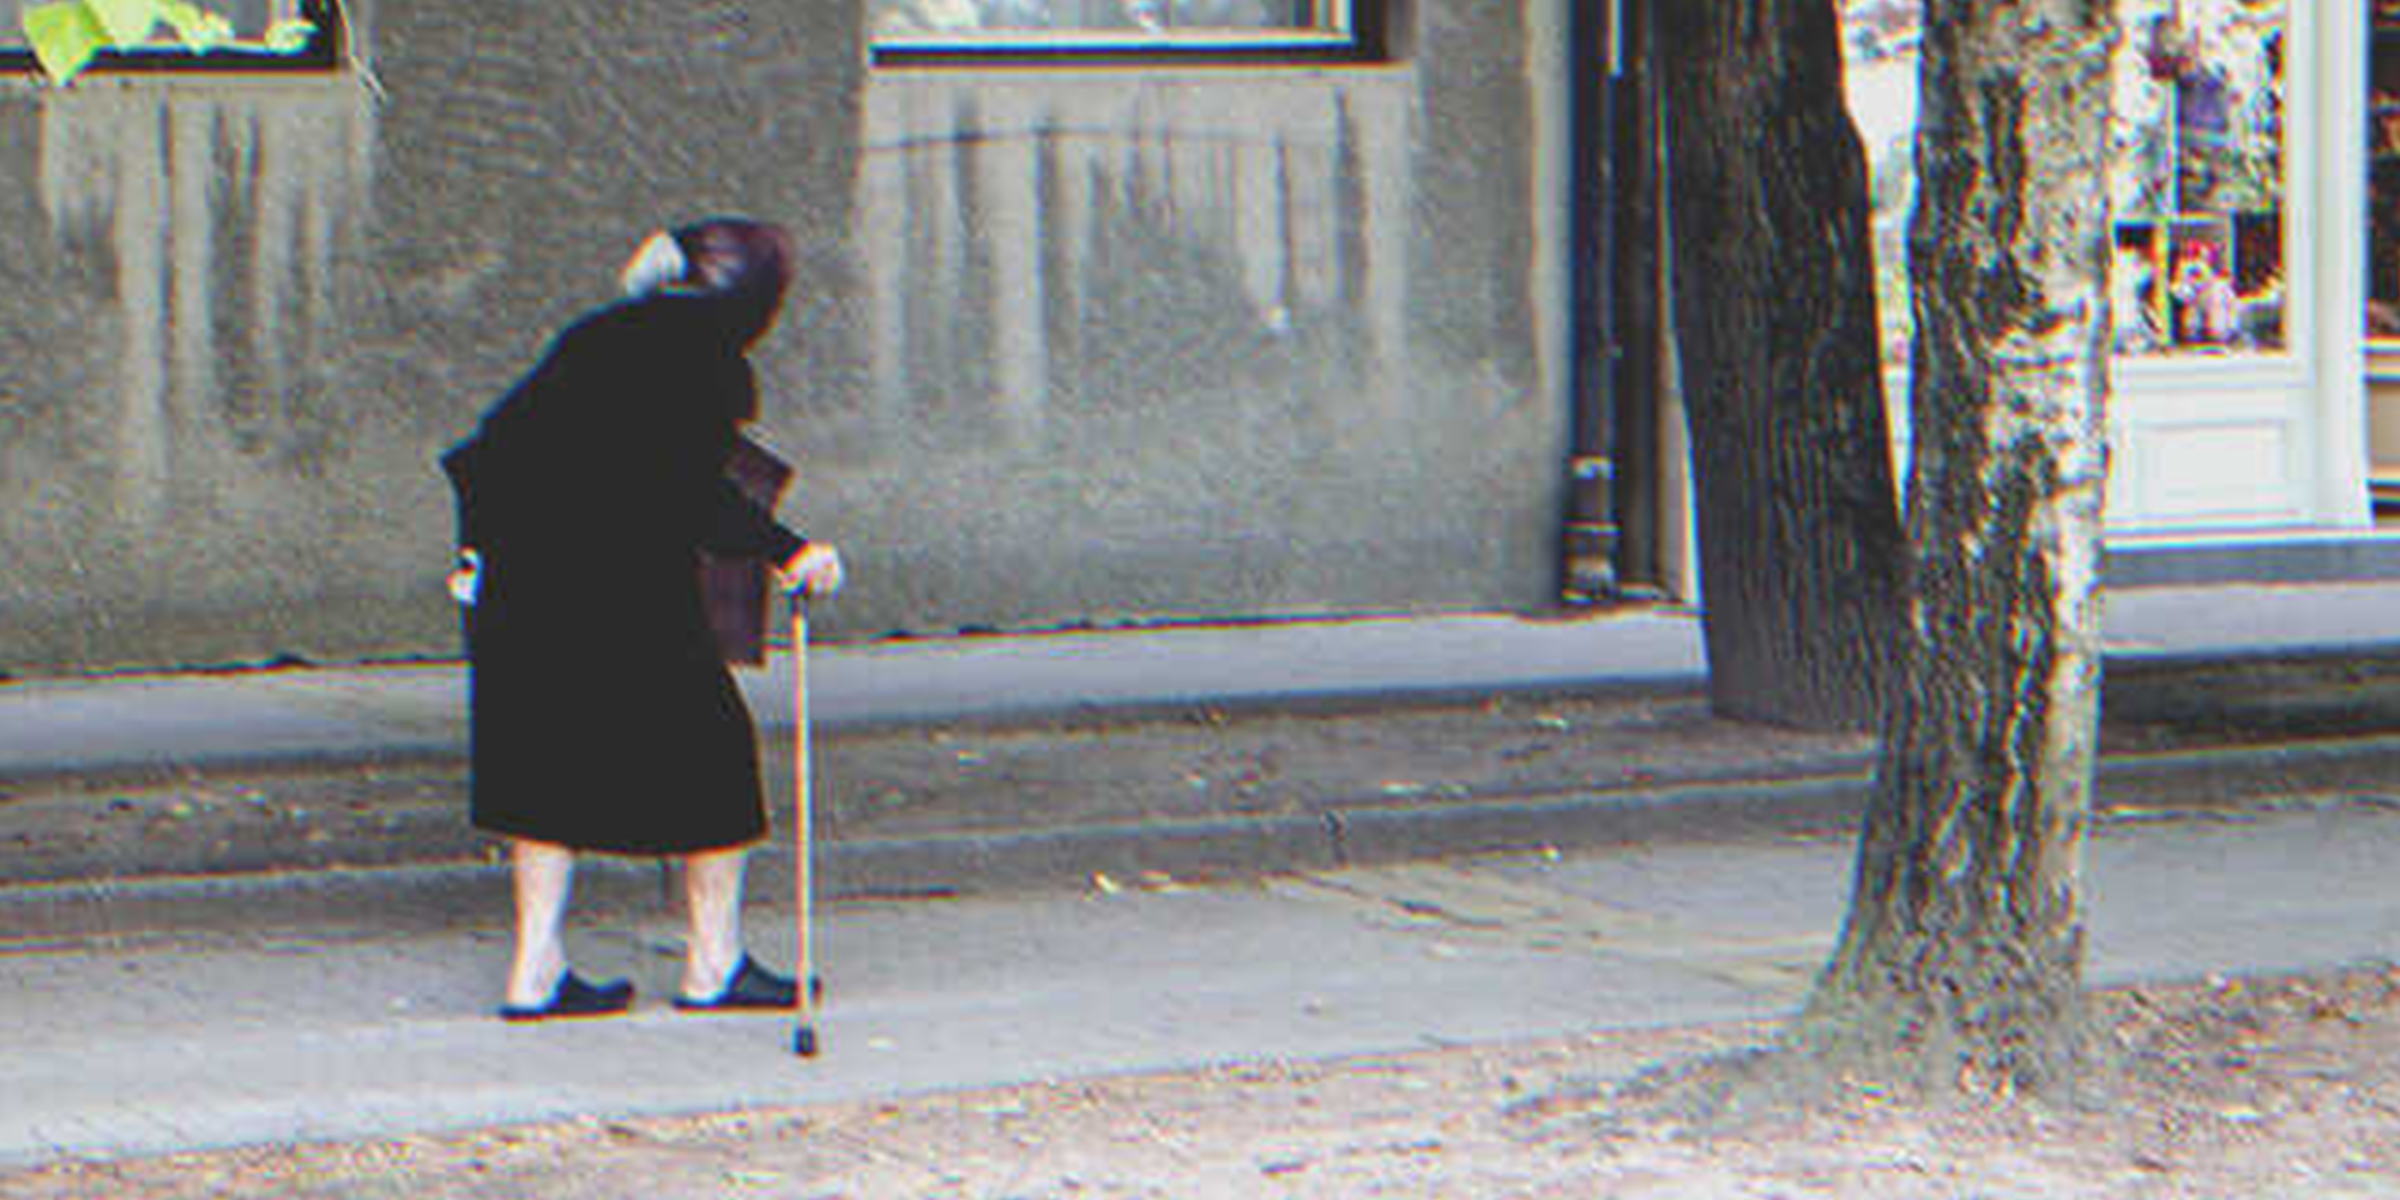 Seniorin auf der Straße | Quelle: Shutterstock